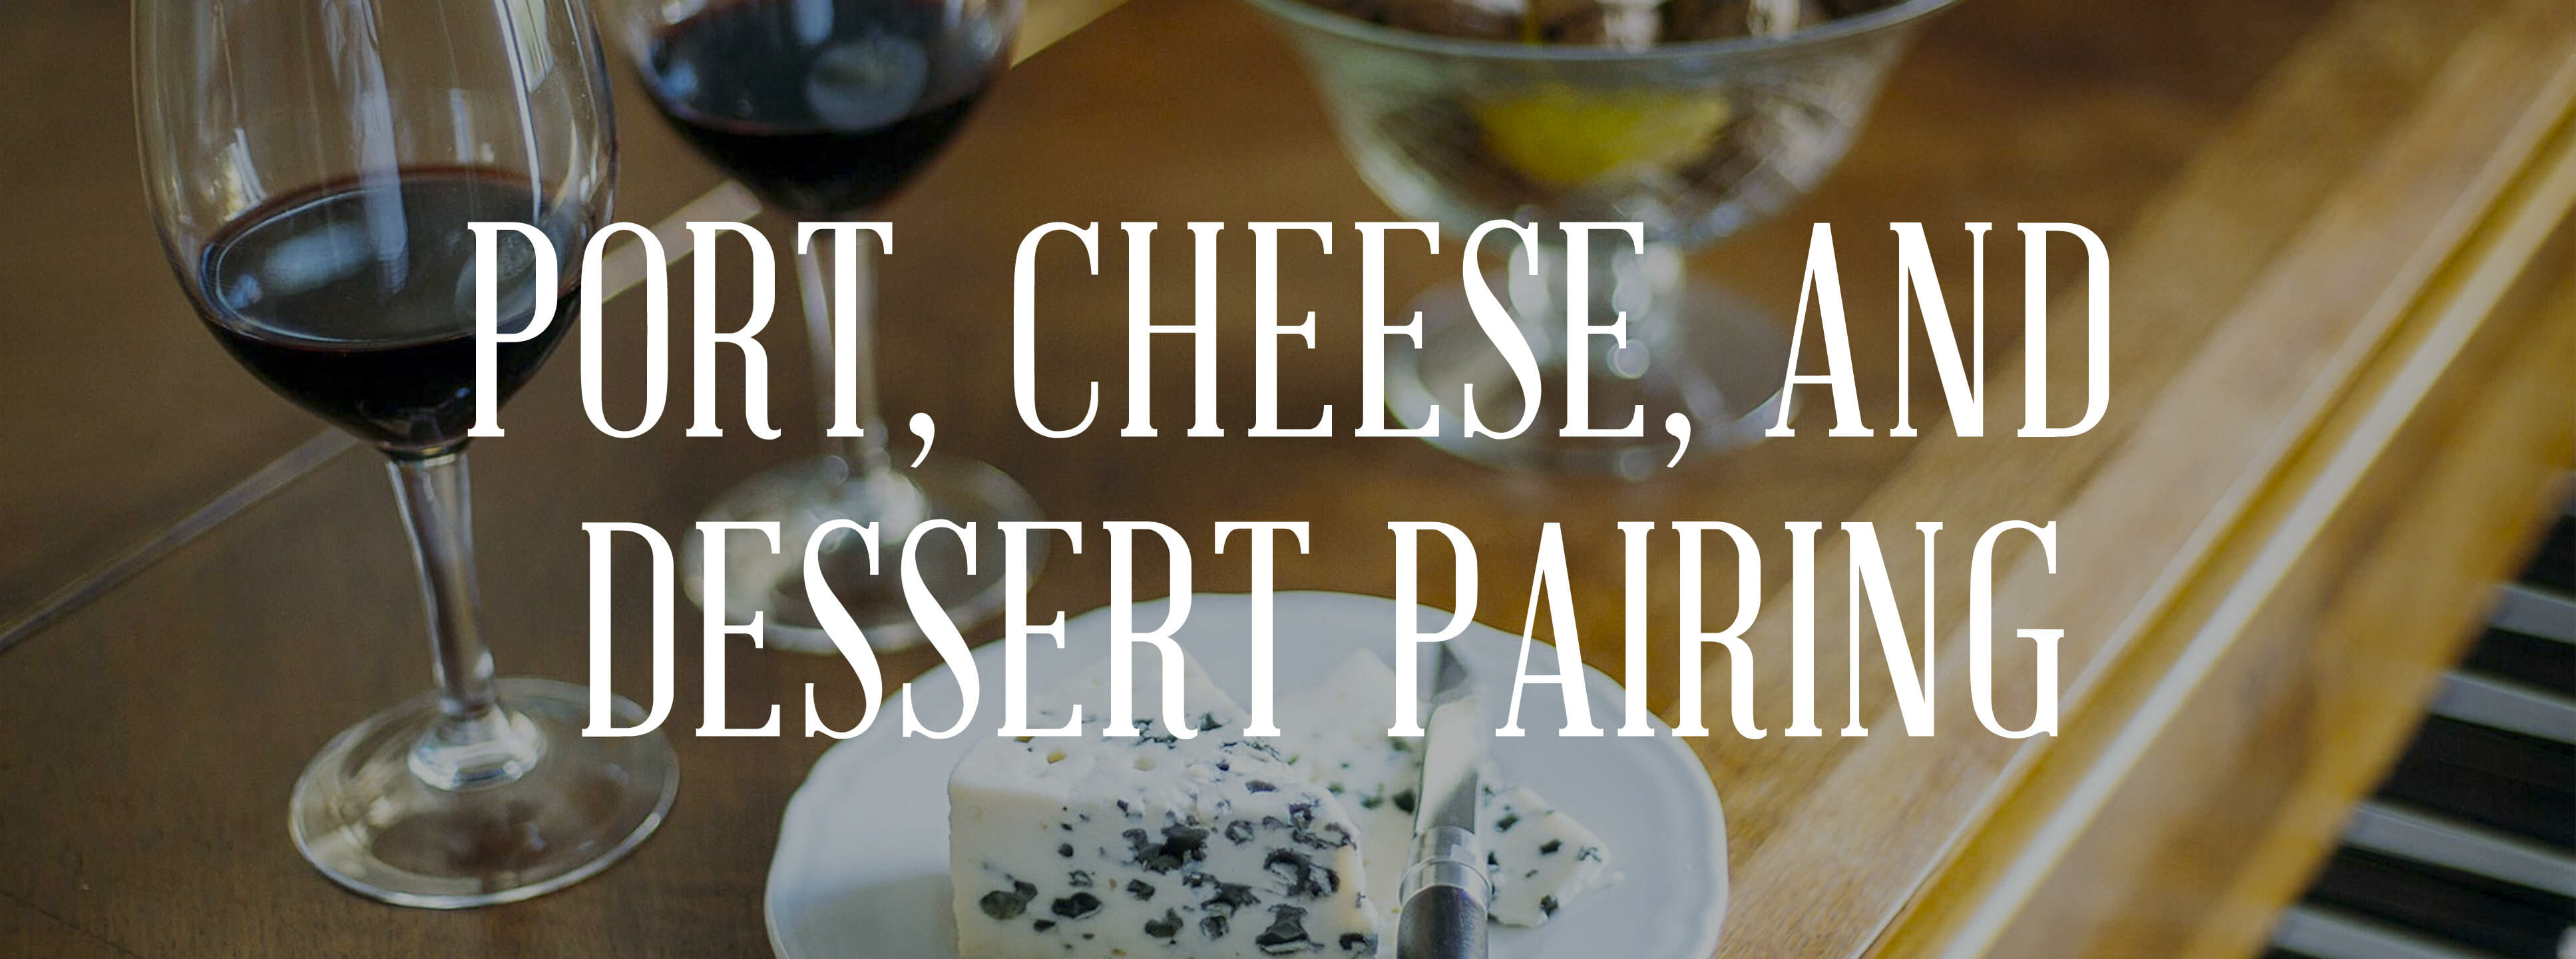 port cheese dessert pairing